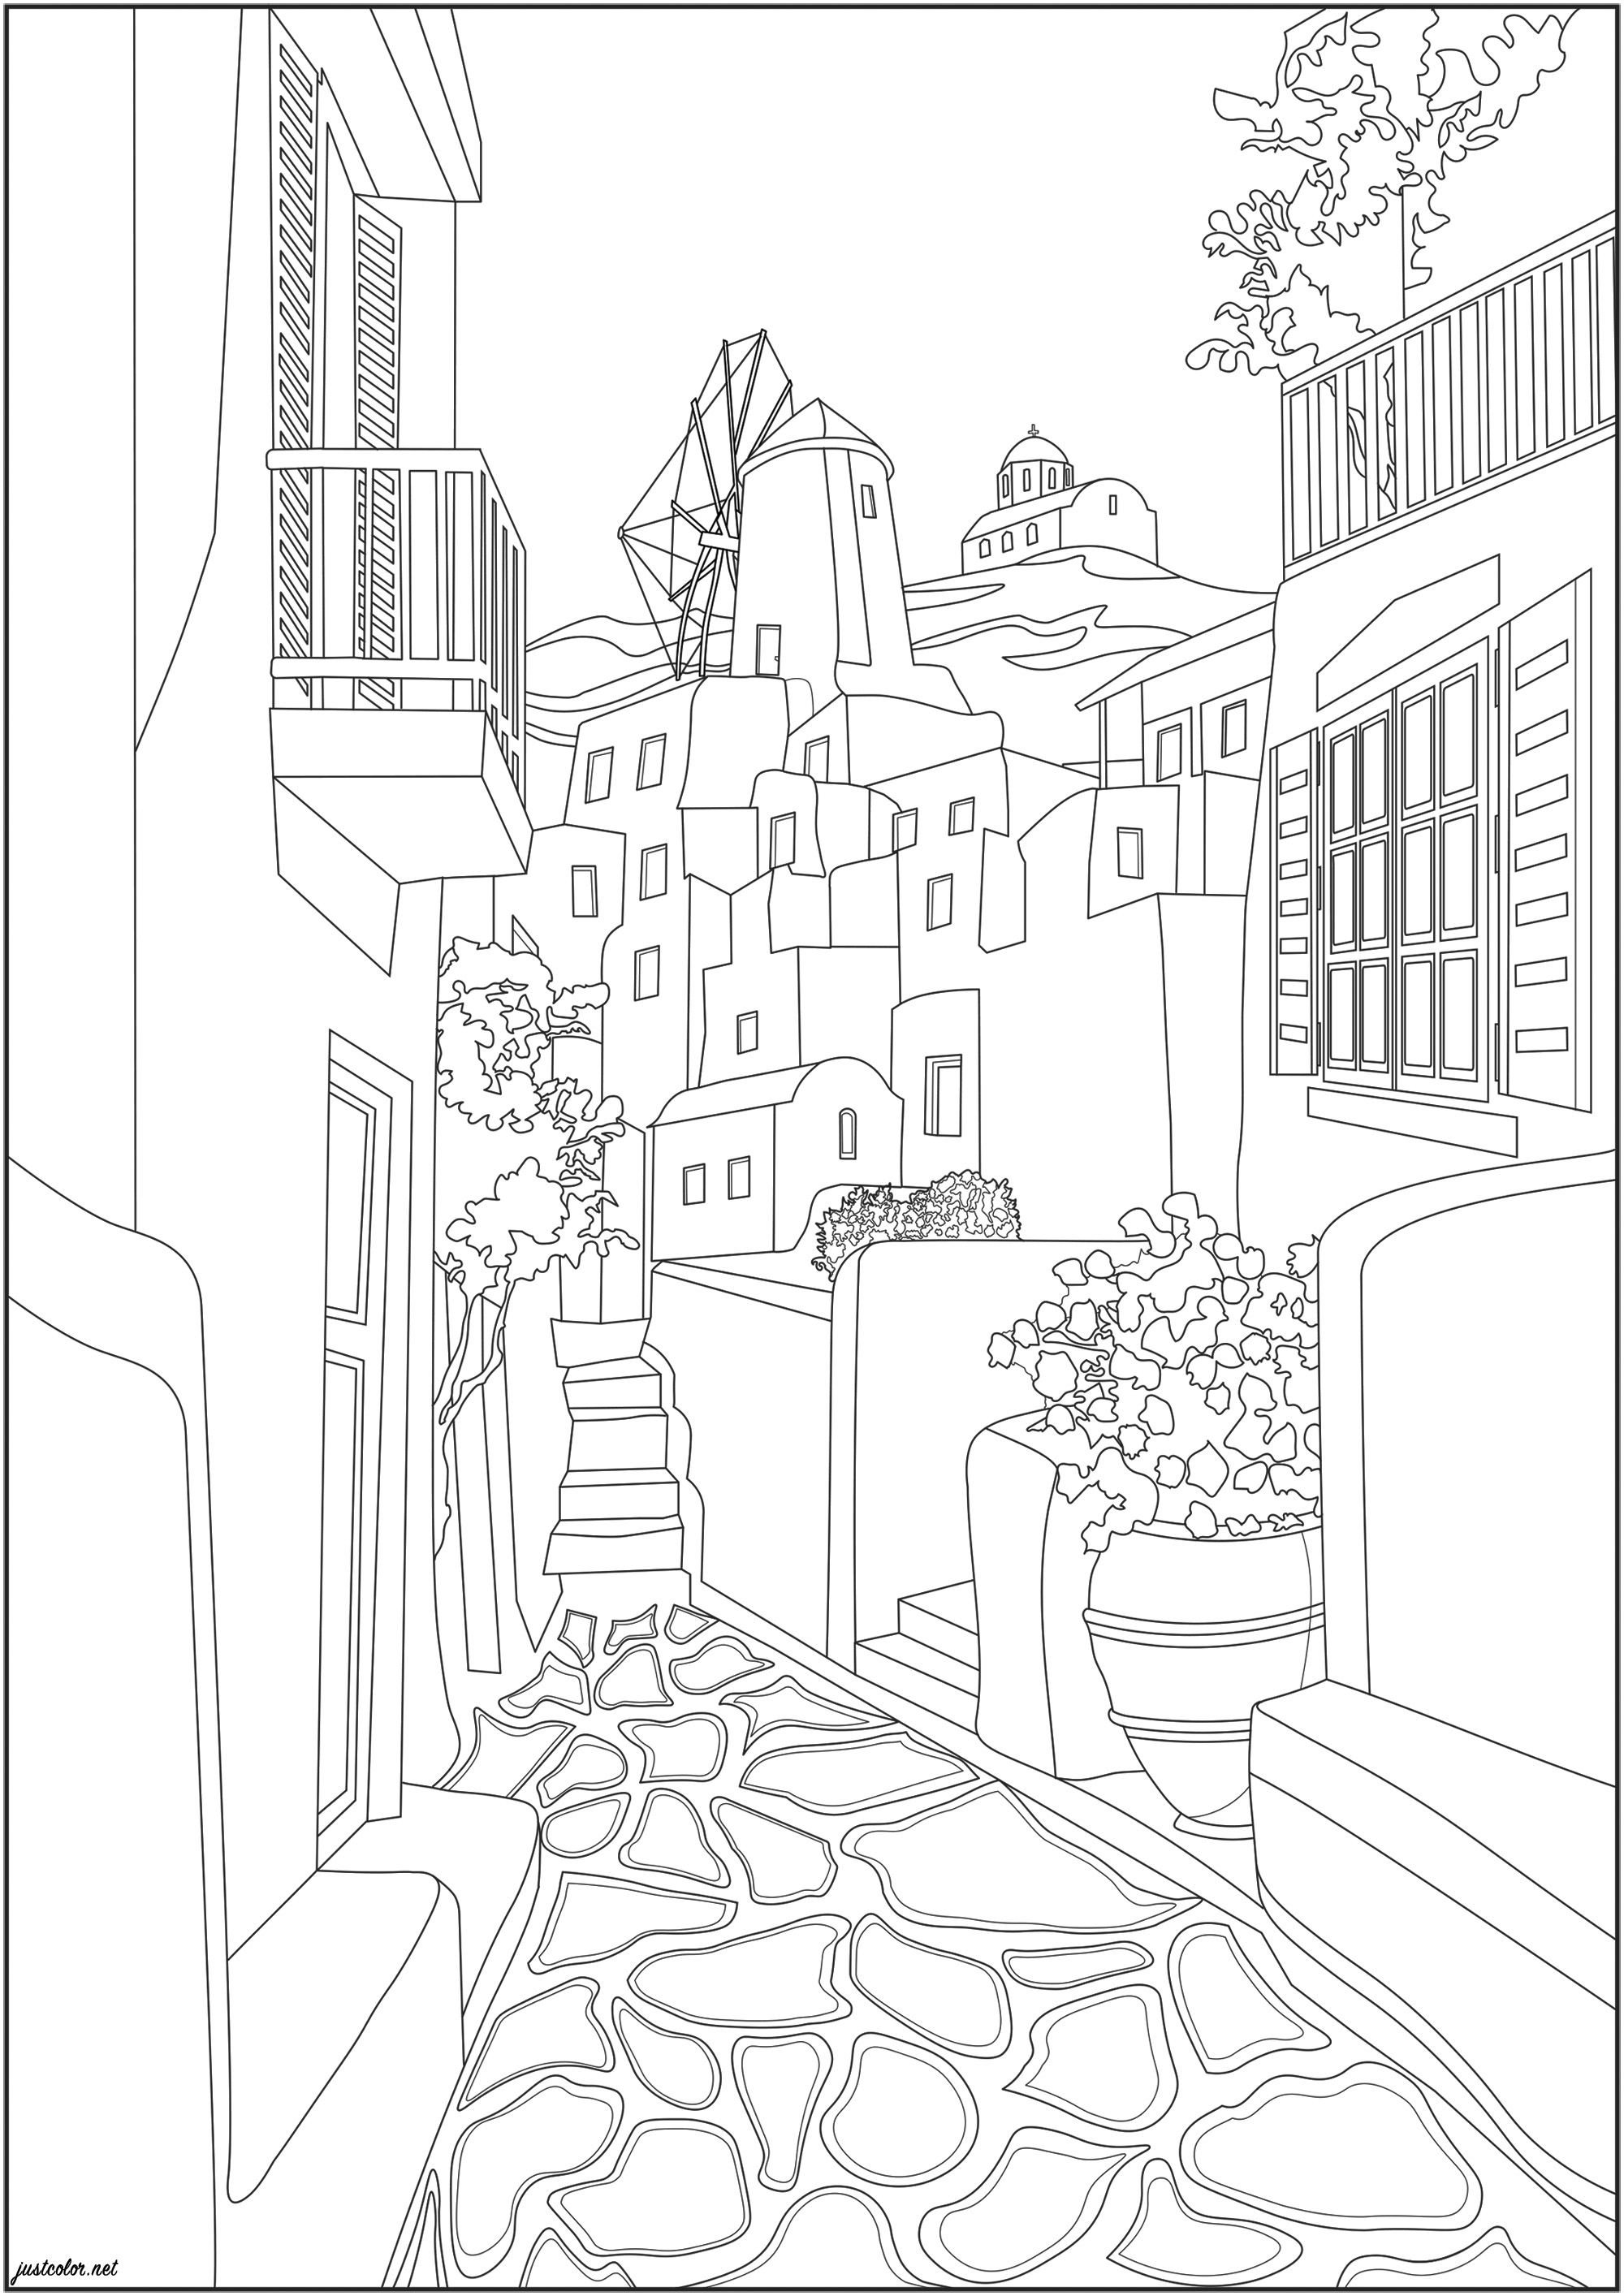 Bonita calle en una típica ciudad portuguesa. Una hermosa calle estrecha con anchos adoquines, buganvillas y un magnífico molino de viento en lo alto de la ciudad, Artista : Morgan